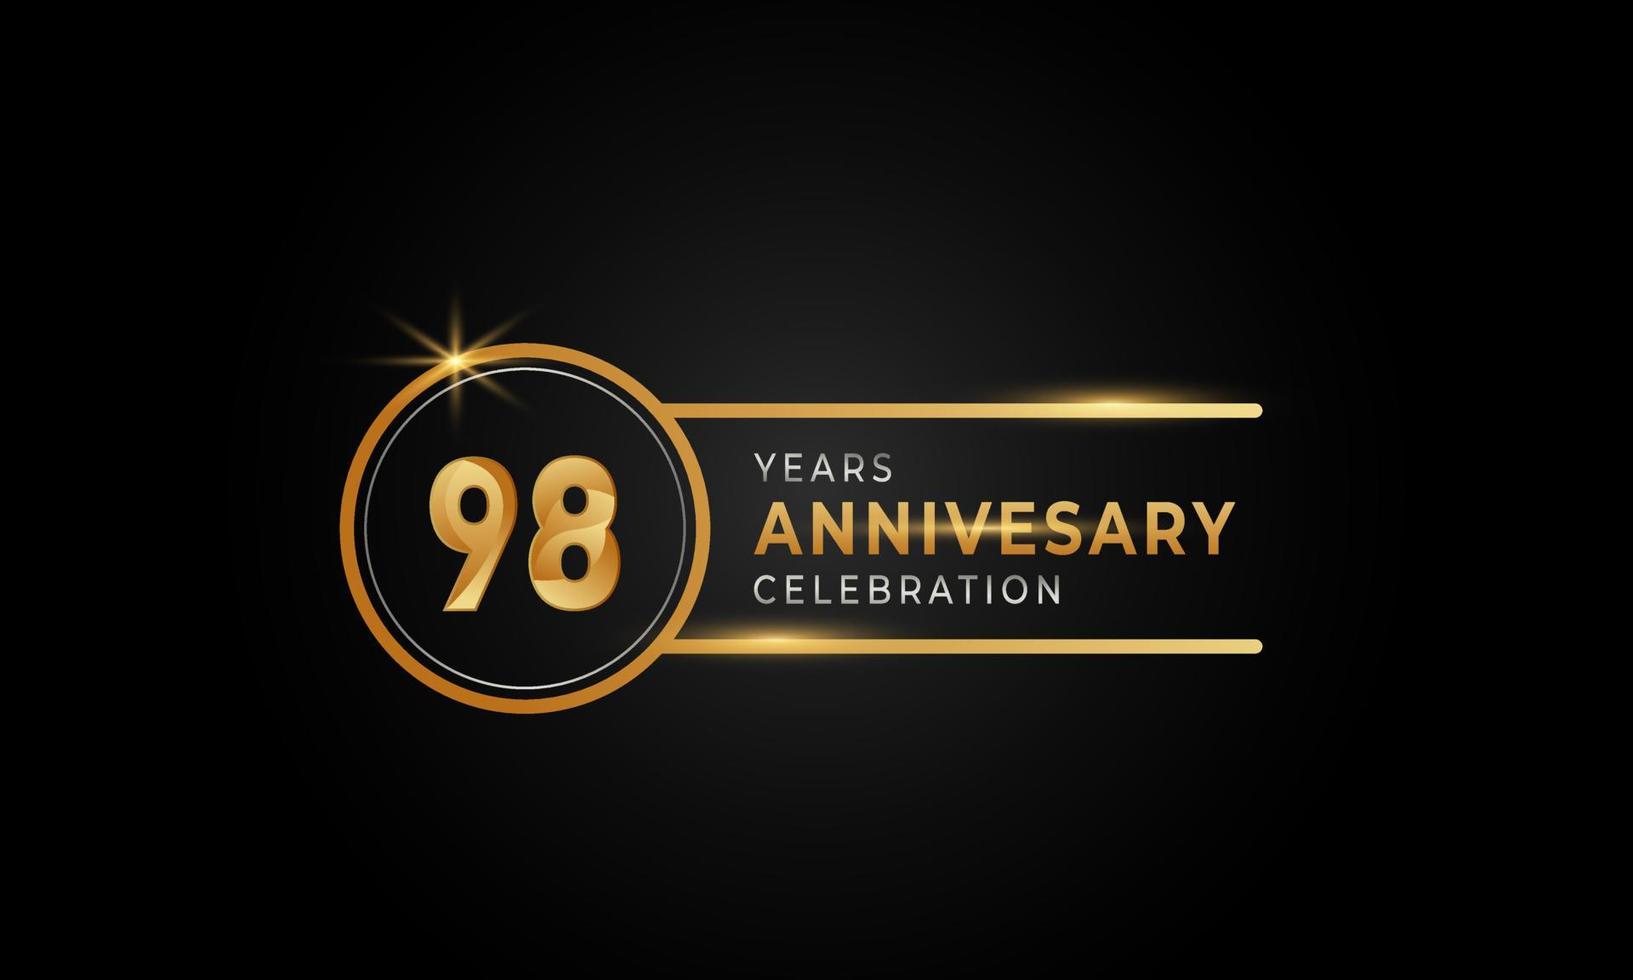 98-jähriges Jubiläum goldene und silberne Farbe mit Kreisring für Feierlichkeiten, Hochzeiten, Grußkarten und Einladungen einzeln auf schwarzem Hintergrund vektor